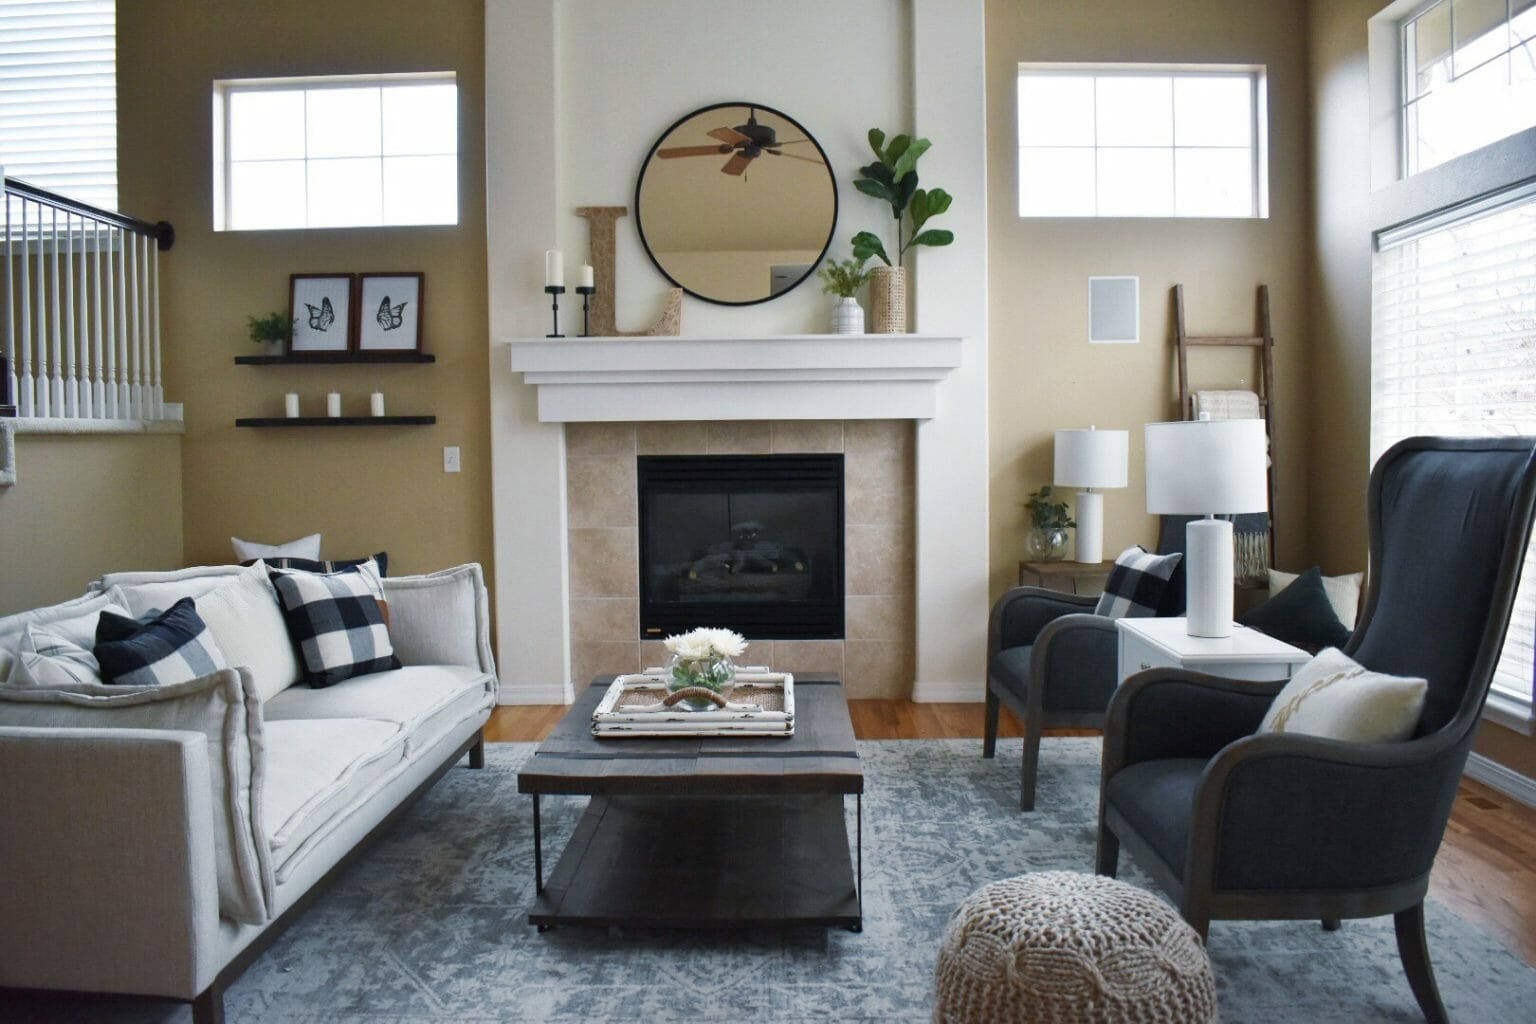 Traditional Living Room By Top Interior Decorator Colorado Springs Alyssa H 1536x1024 